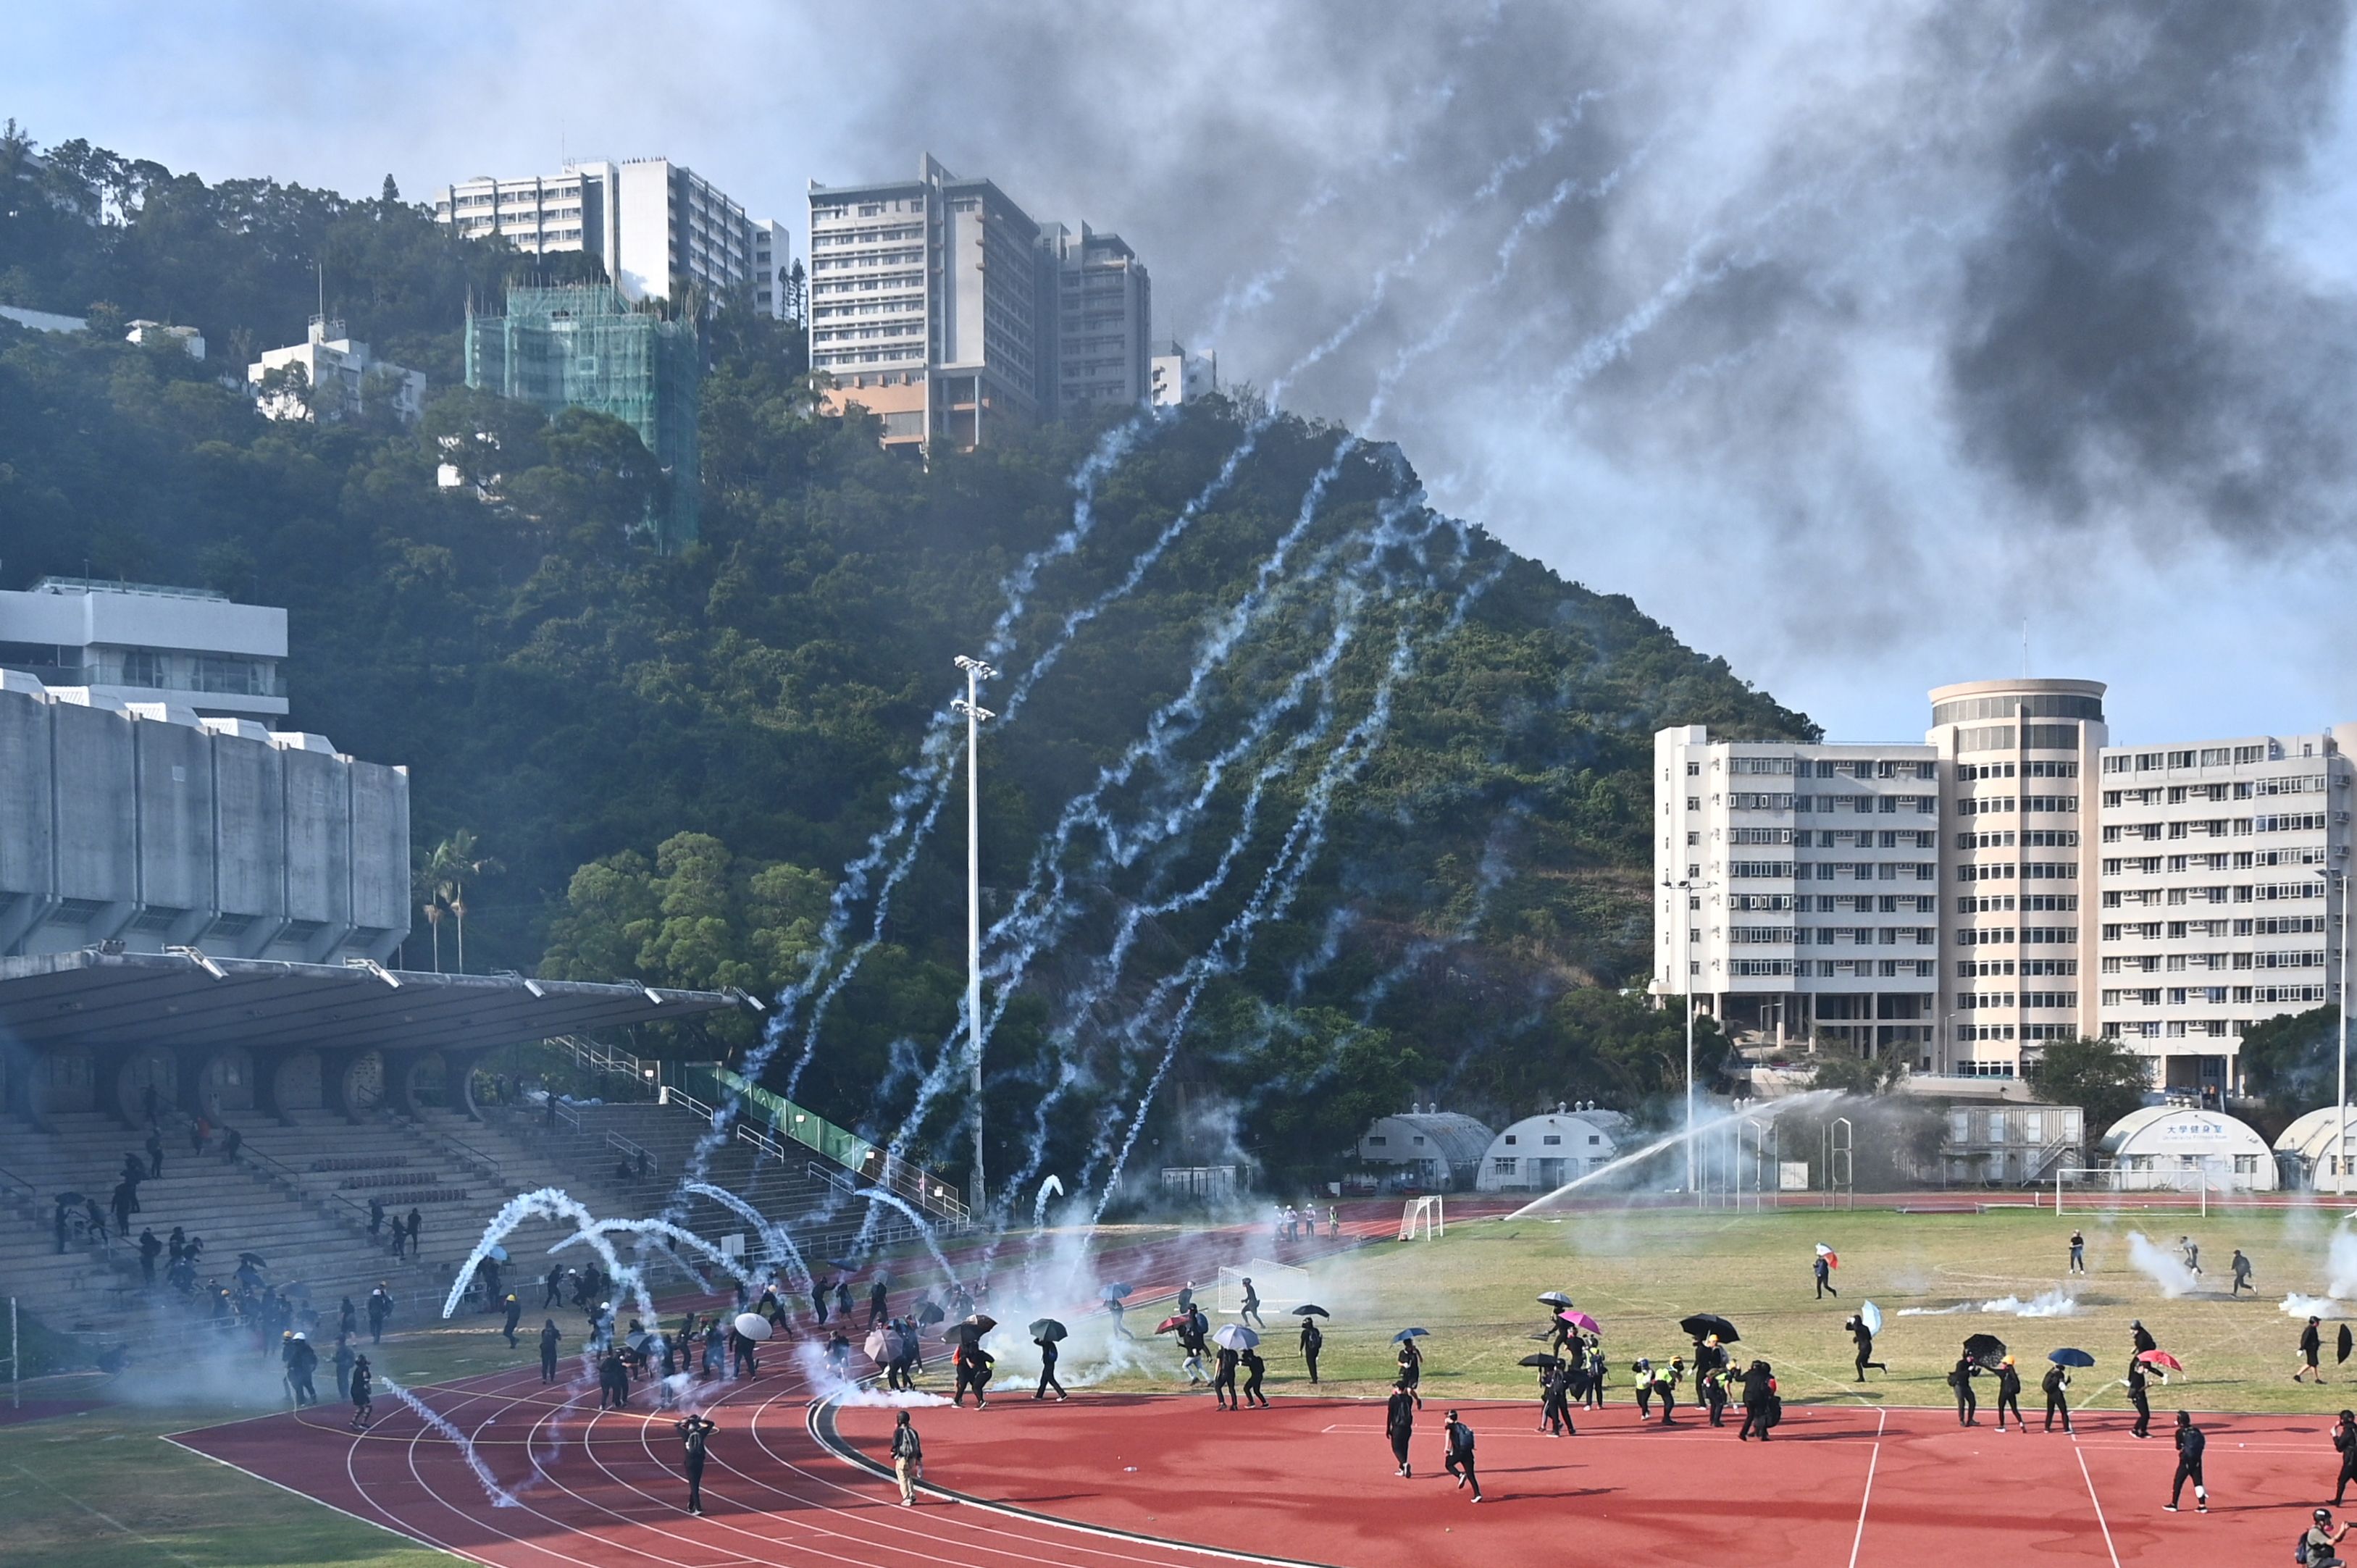 Protestantes corren mientras las bombas de gas caen en la Universidad  de Hong Kong (CUHK). (Foto Prensa Libre: AFP)